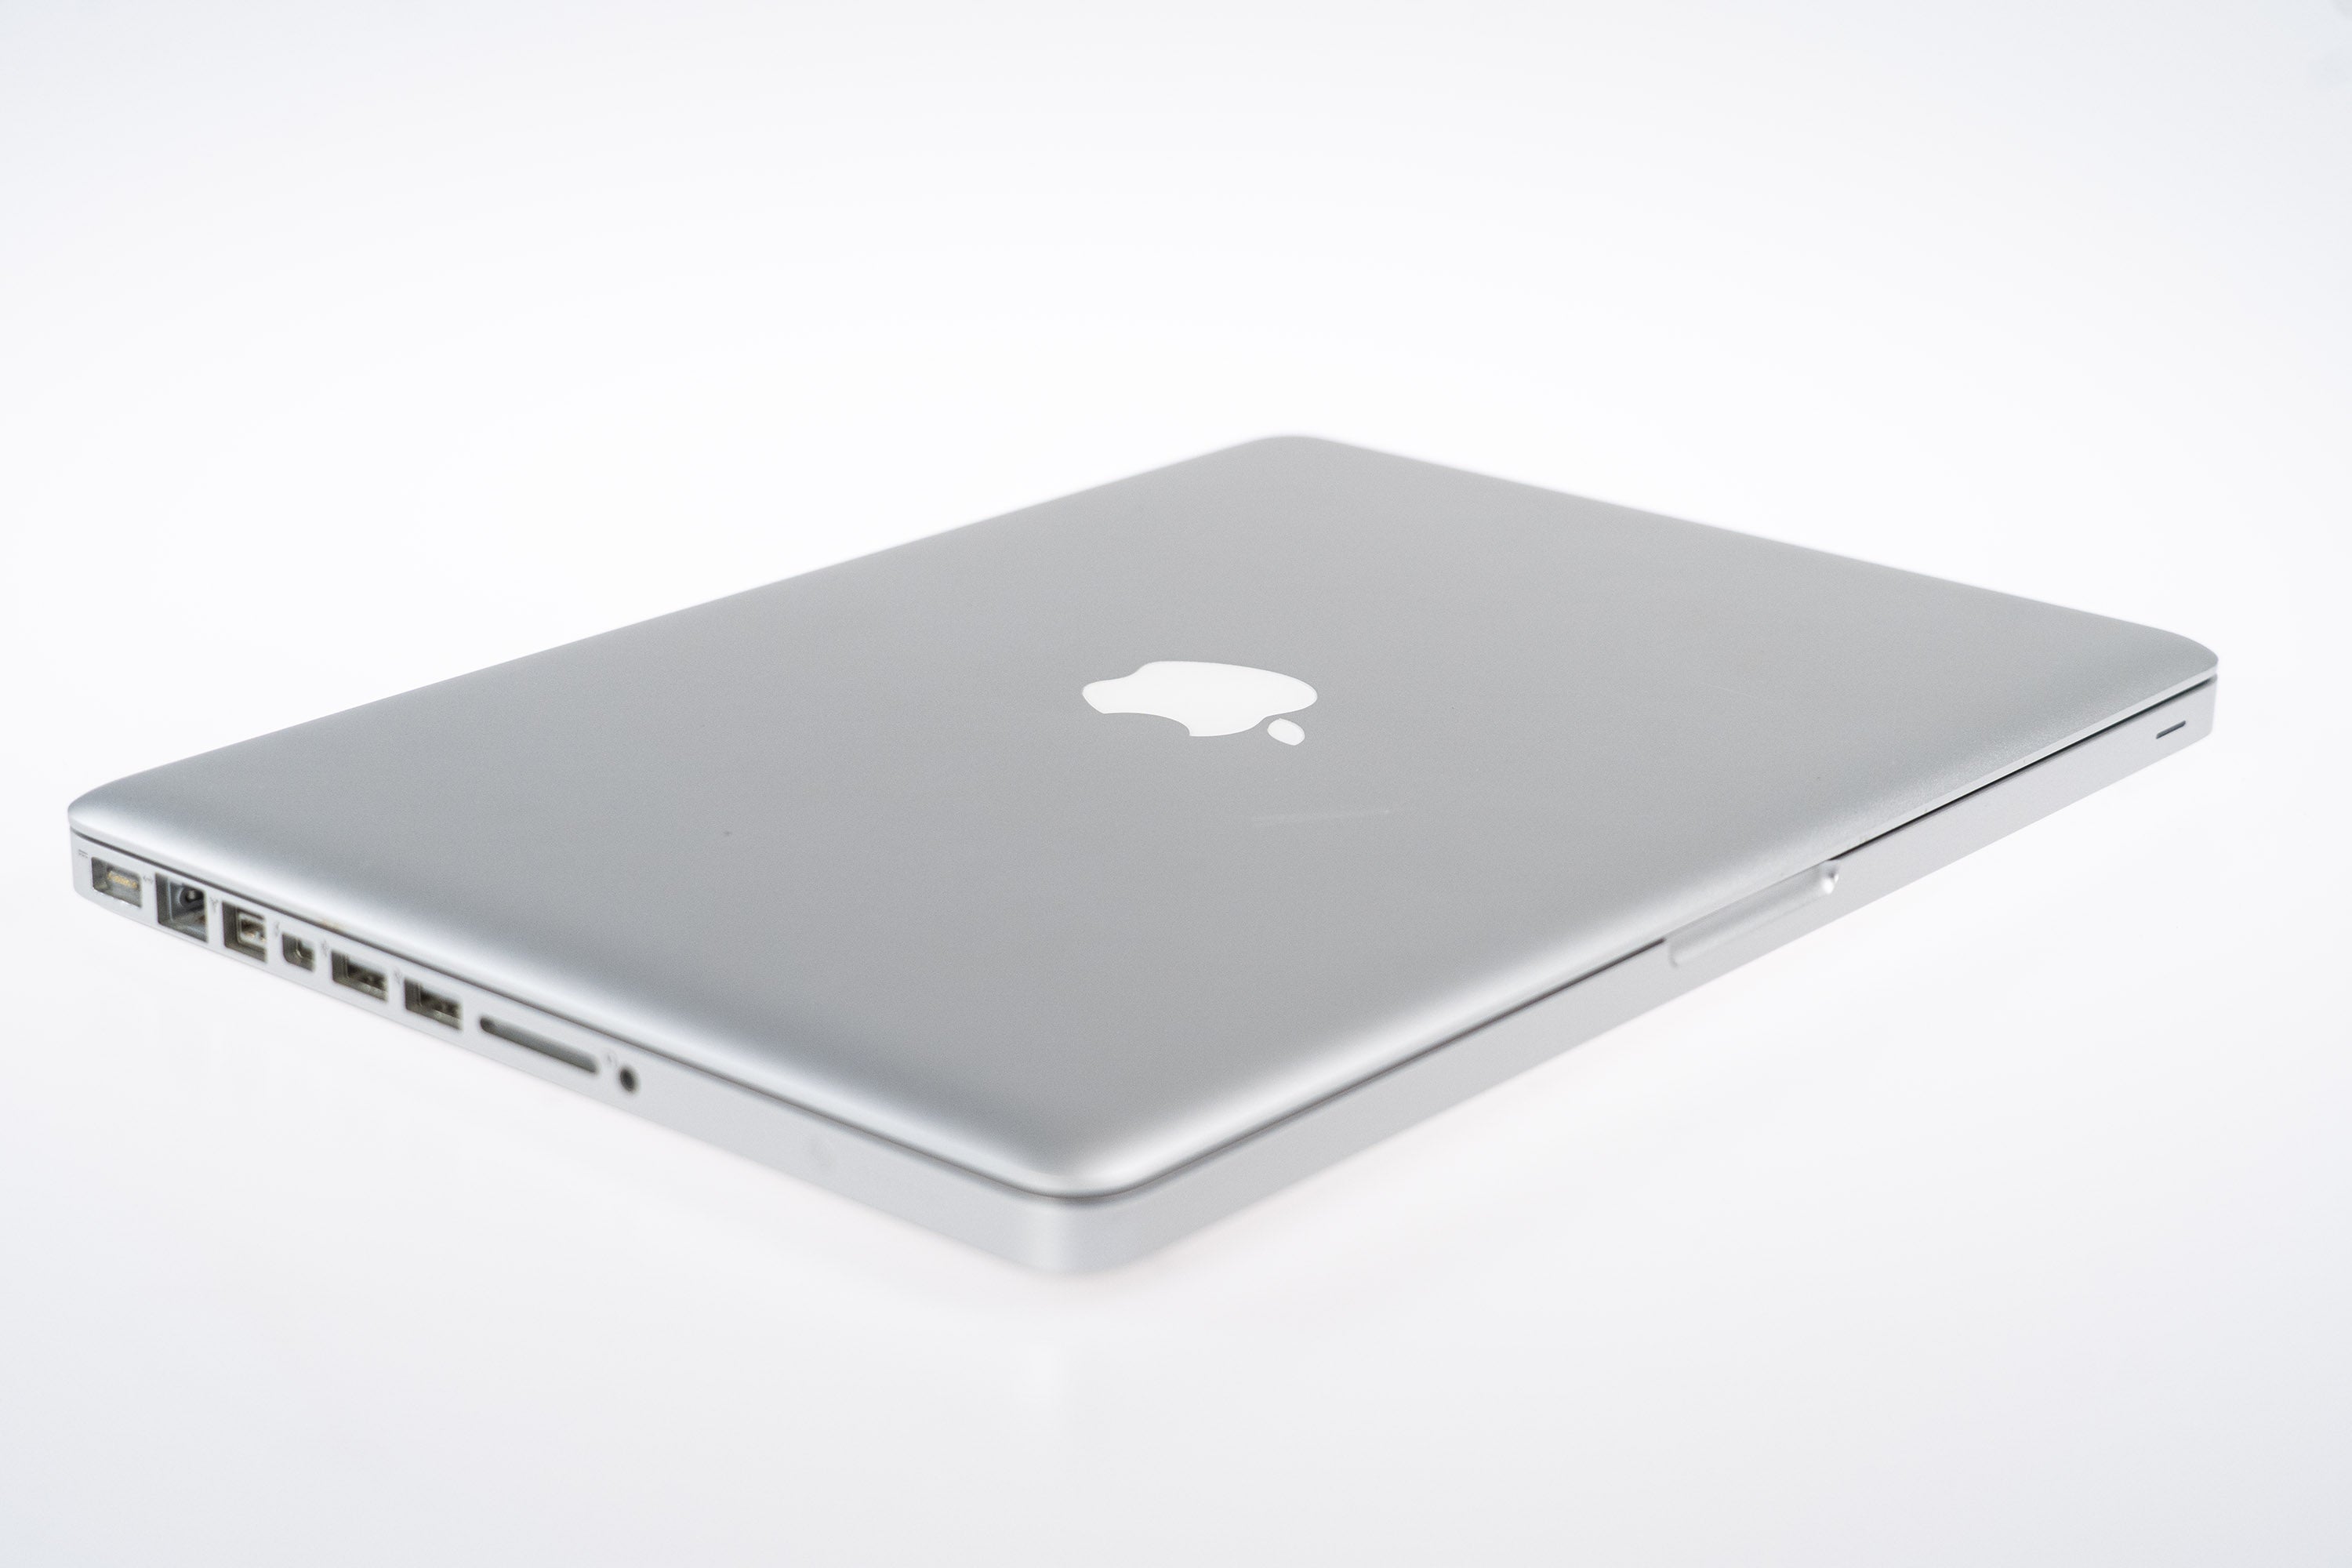 【特価買取】MacBookPro 2012 13inc/i7/16GB/480GB 美品中古 MacBook本体